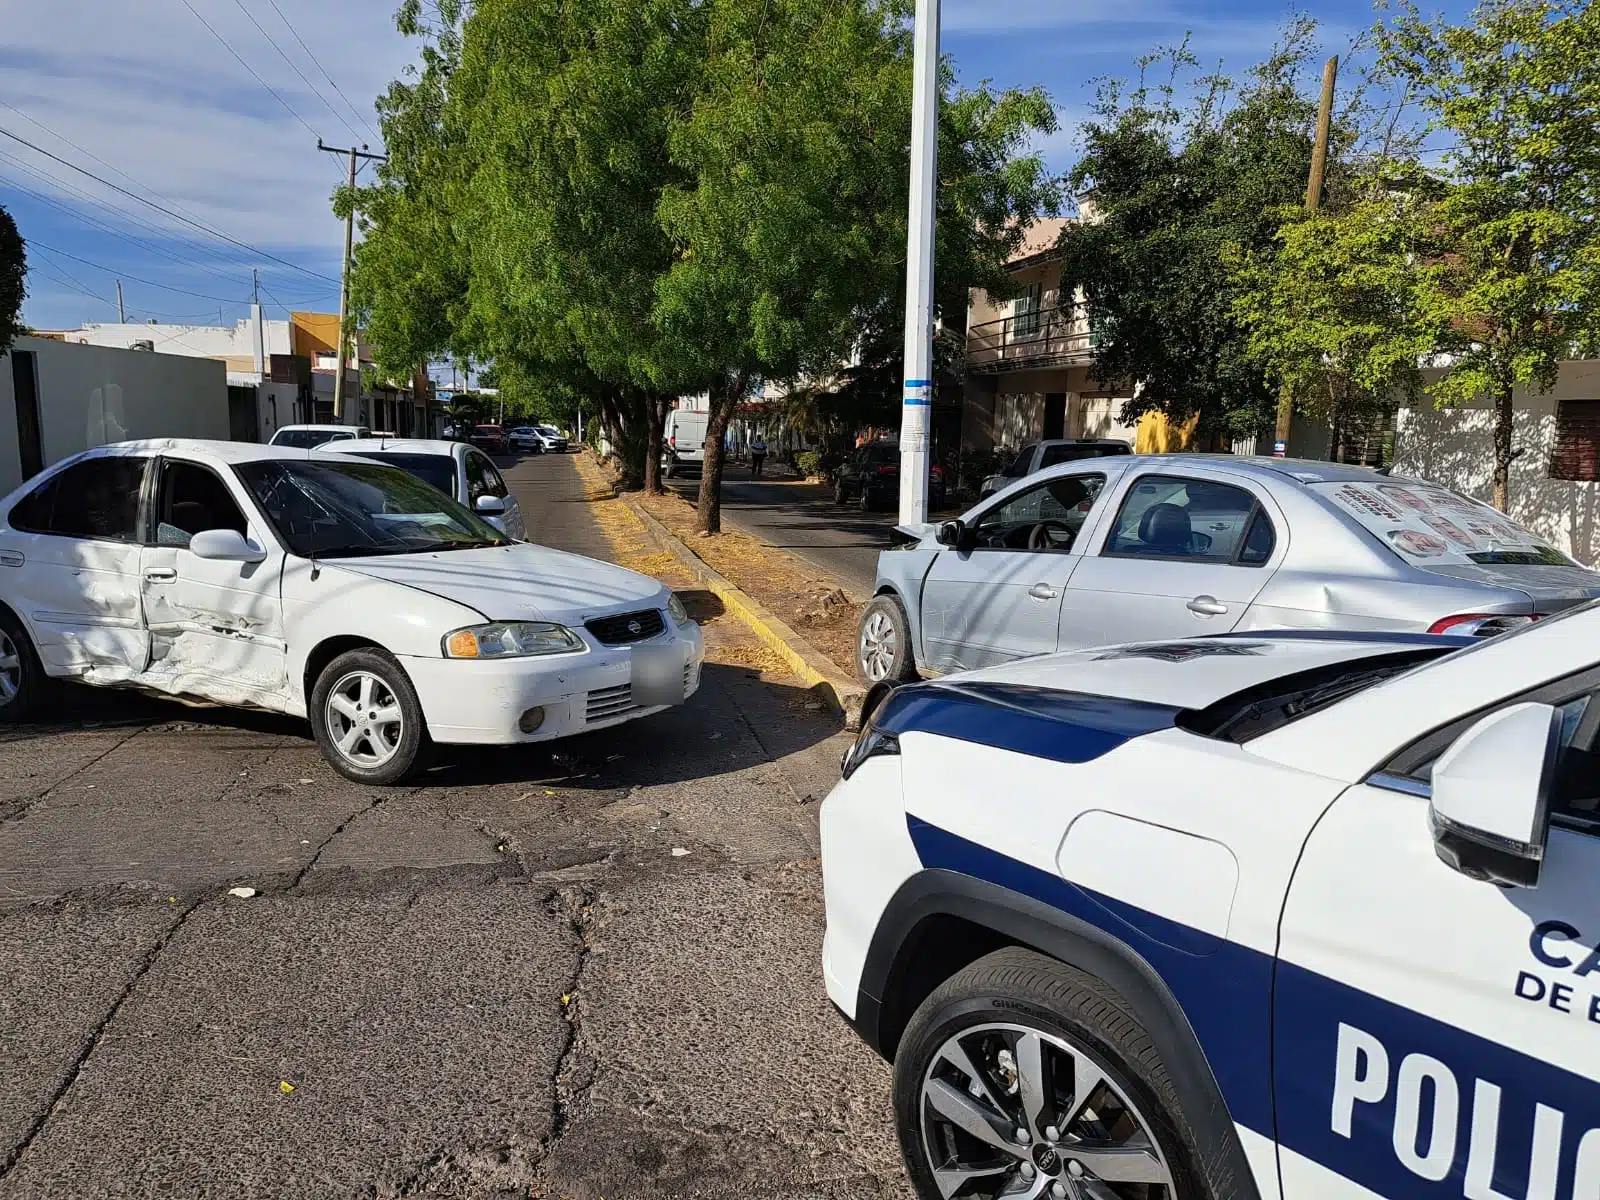 Carros chocados tras un accidente tipo carambola en Culiacán